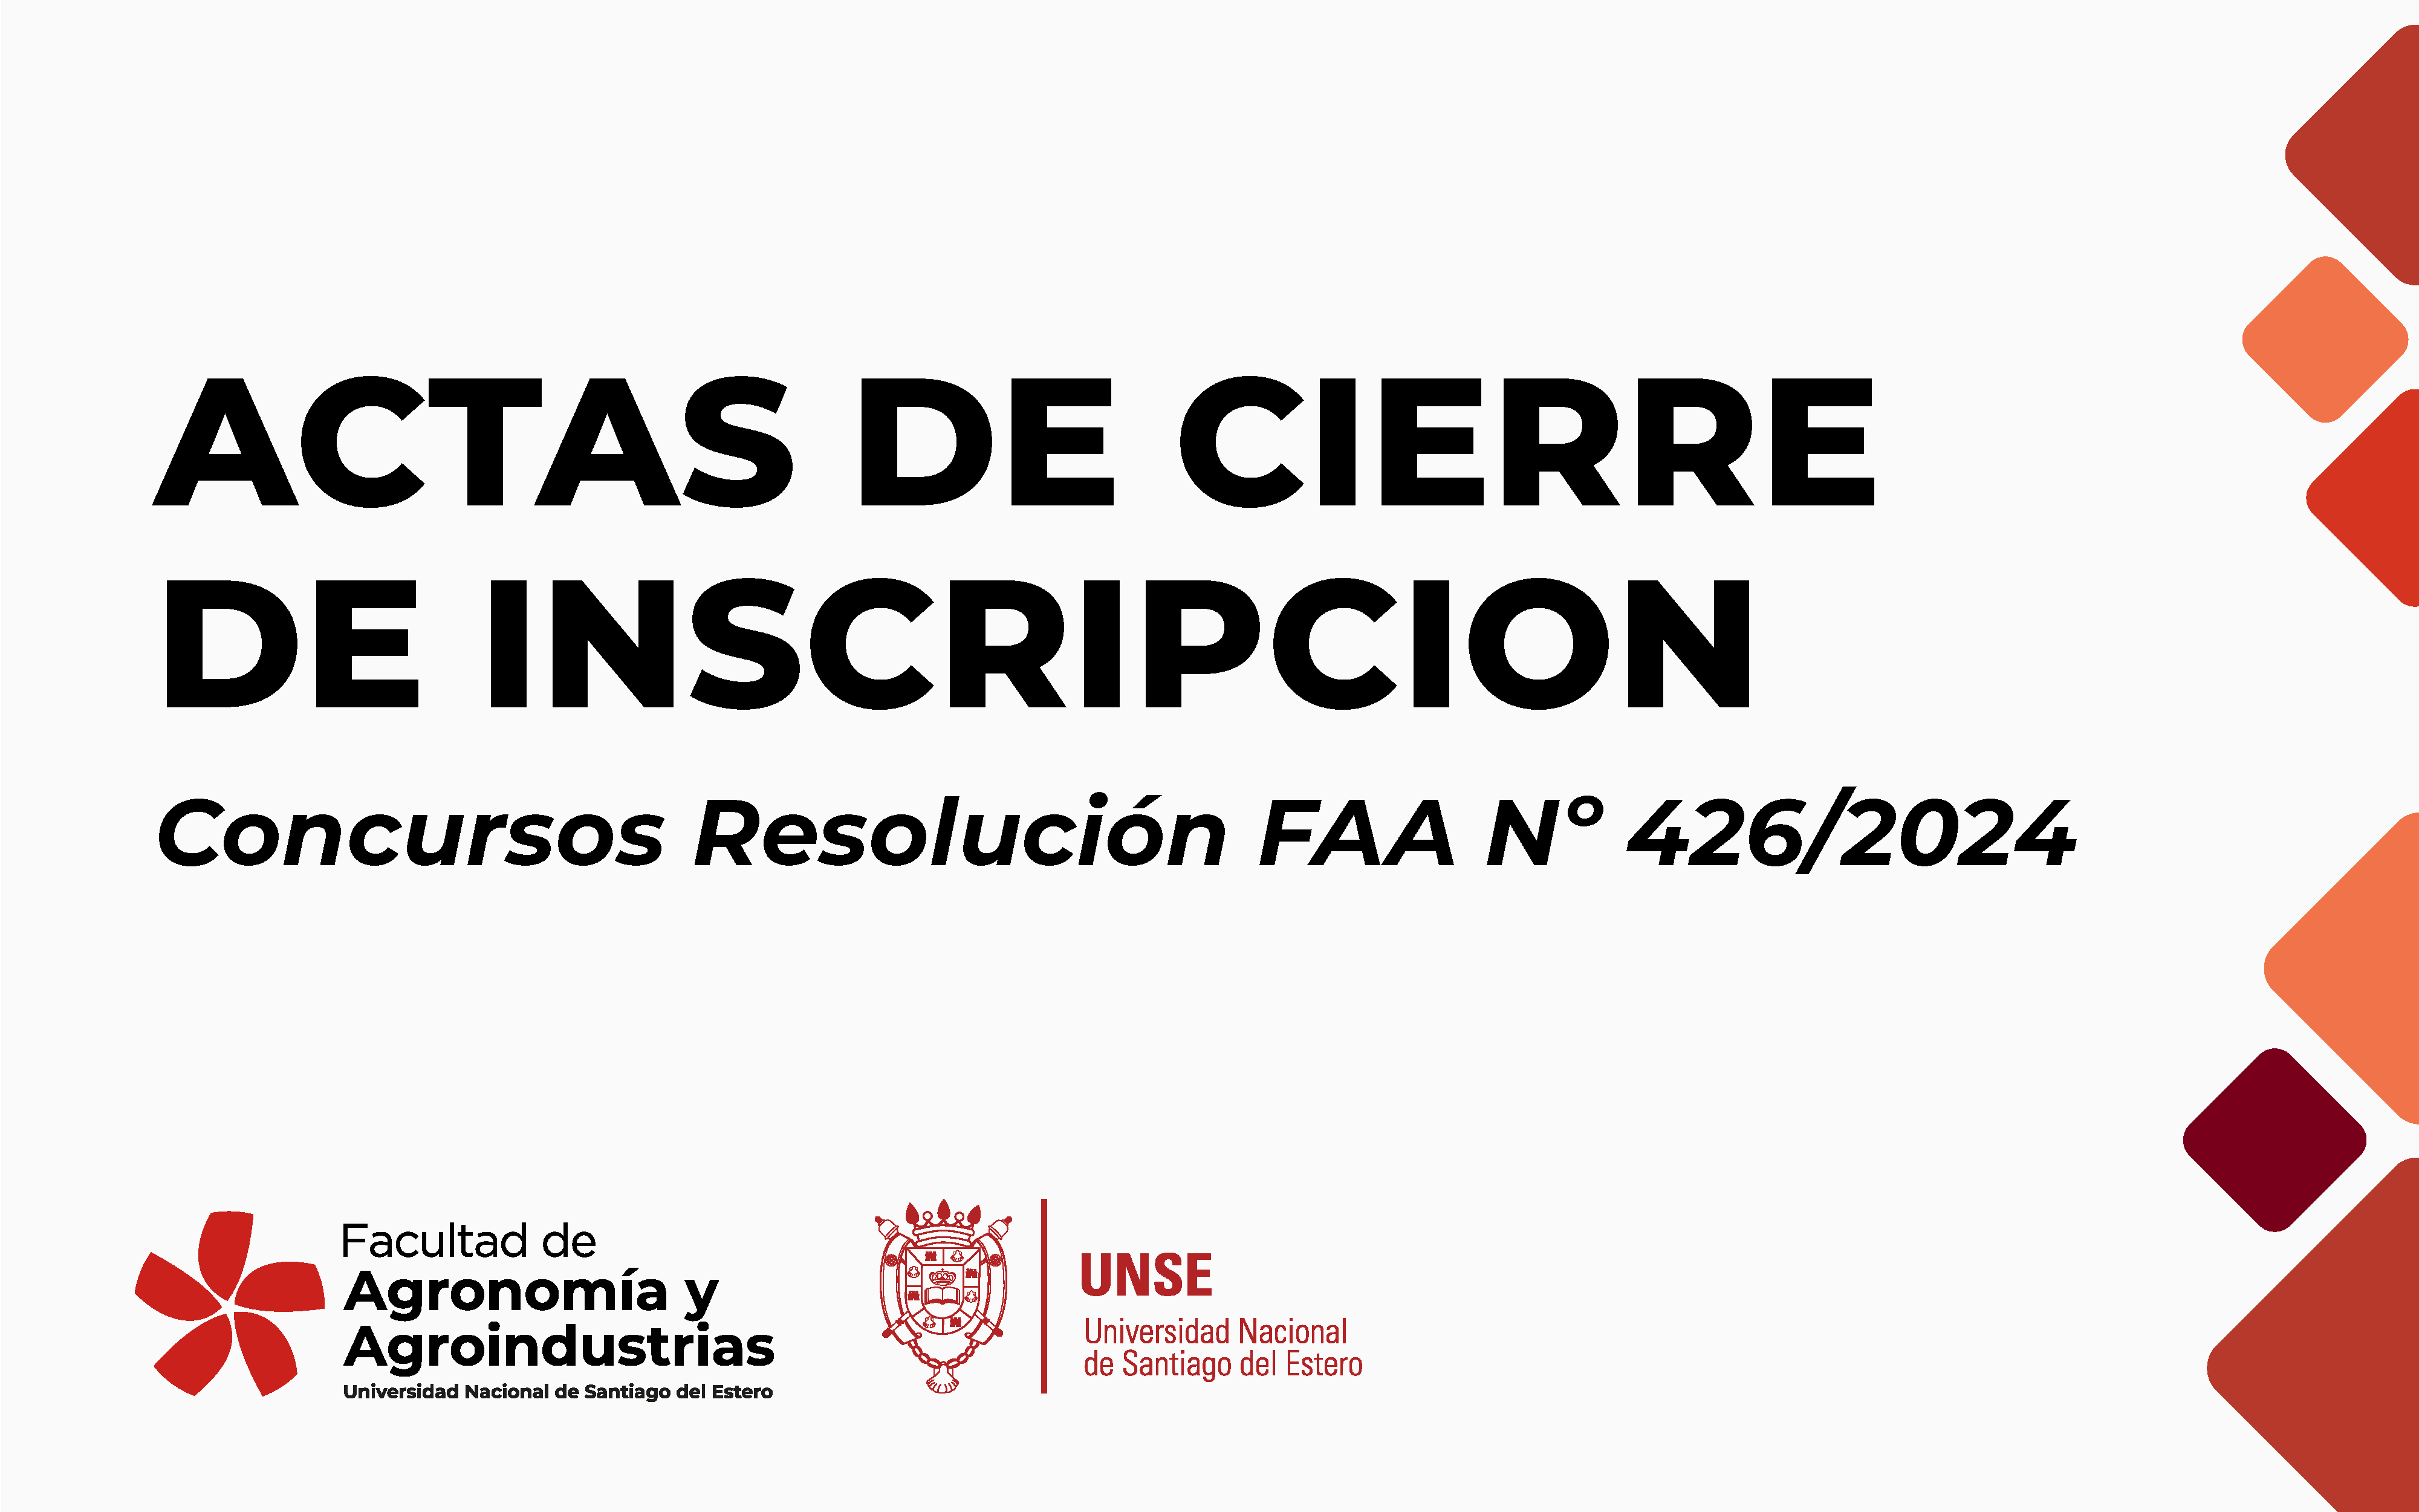 ACTAS DE CIERRE DE INSCRIPCIÓN- CONCURSOS